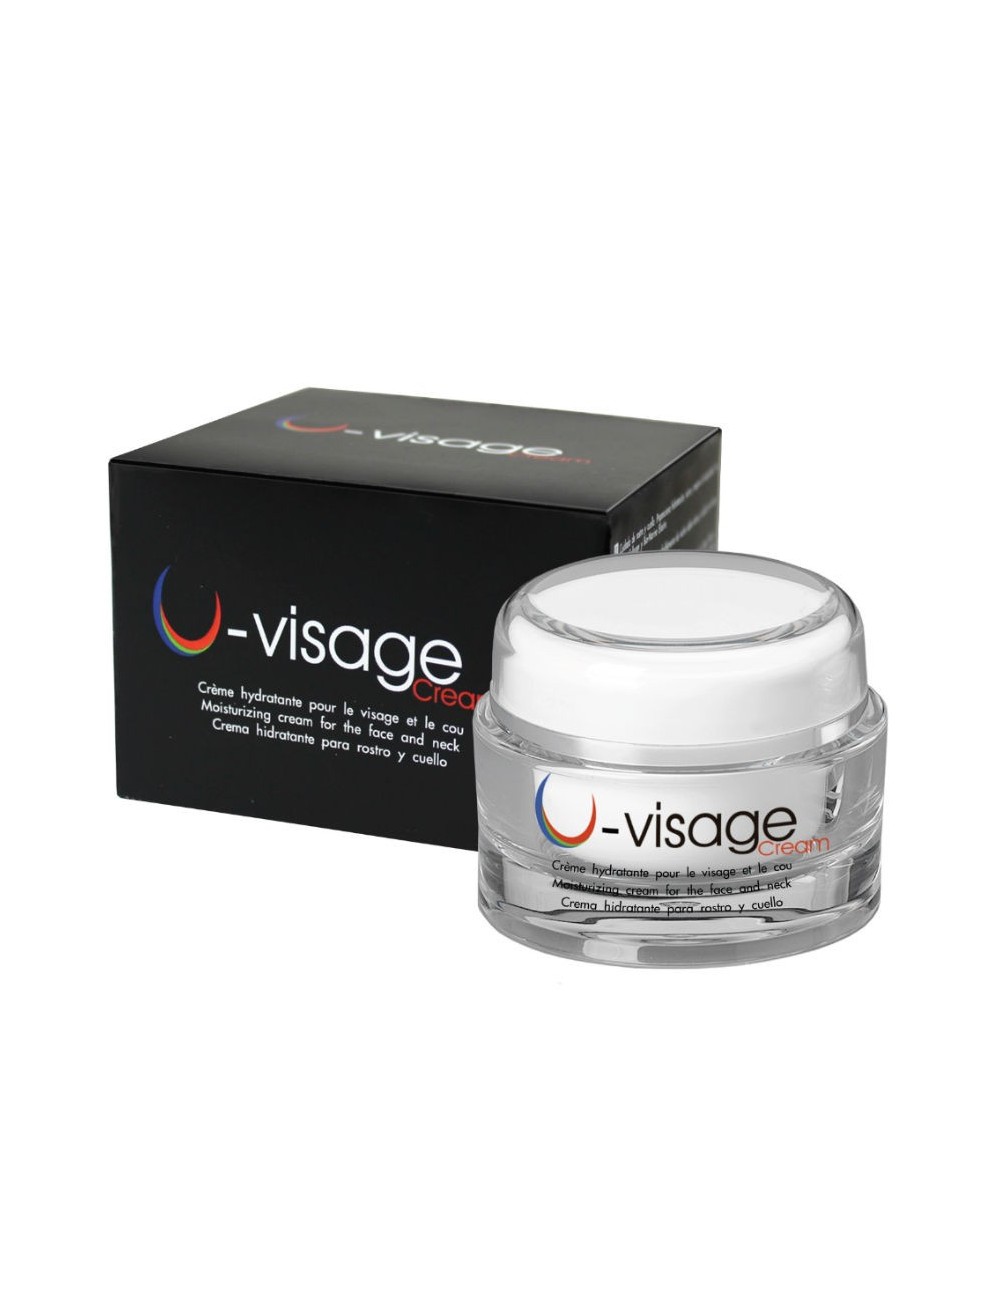 La Crème U-Visage est destinée au soin quotidien du visage et du cou